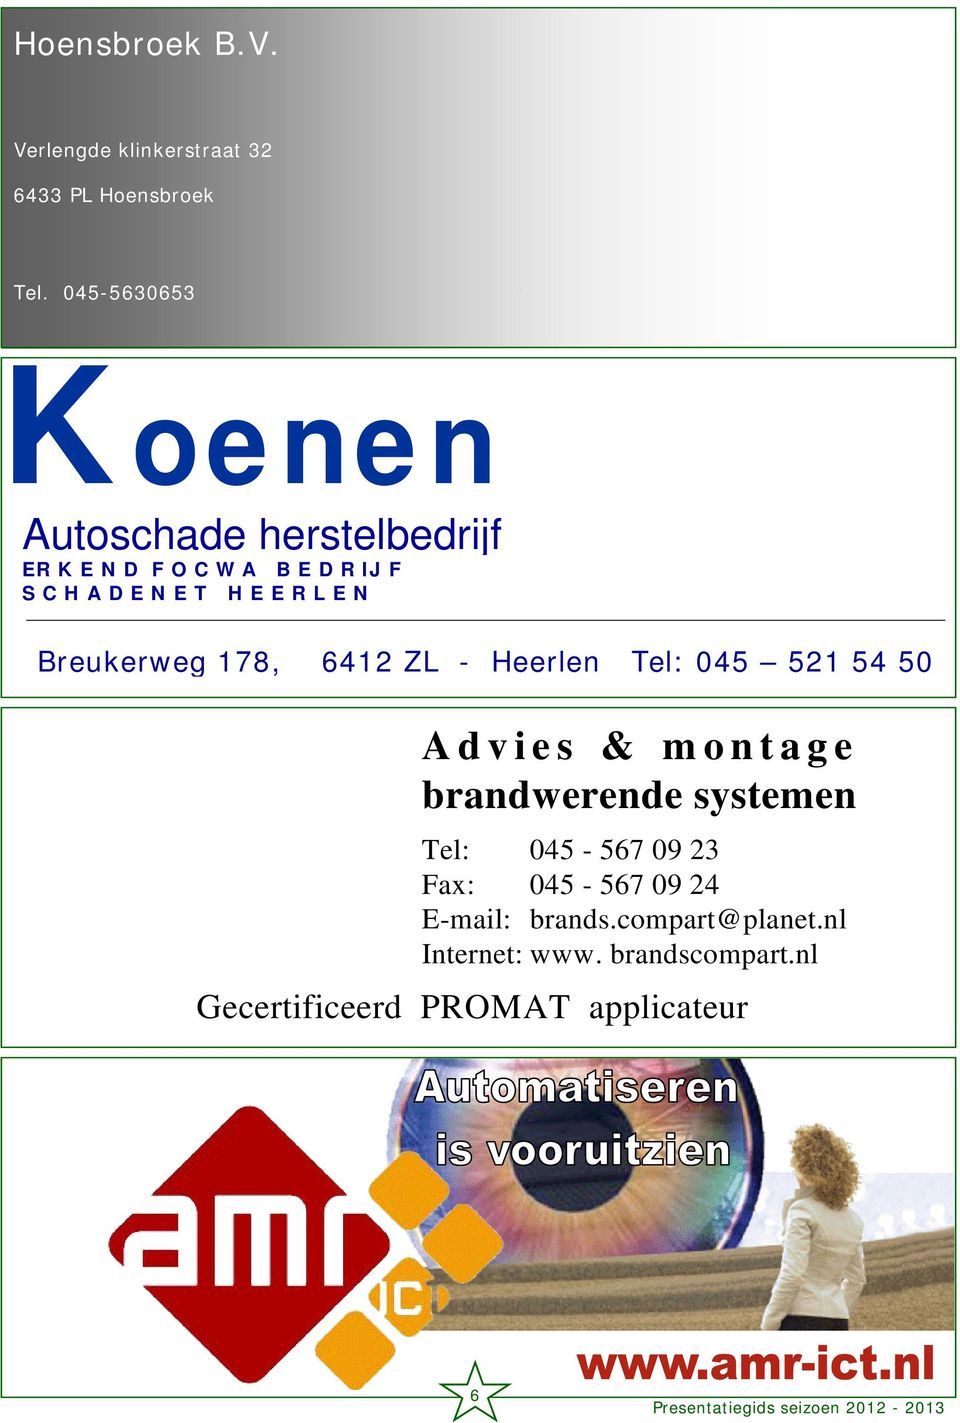 E R L E N Breukerweg 178, 6412 ZL - Heerlen Tel: 045 521 54 50 Advies & montage brandwerende systemen